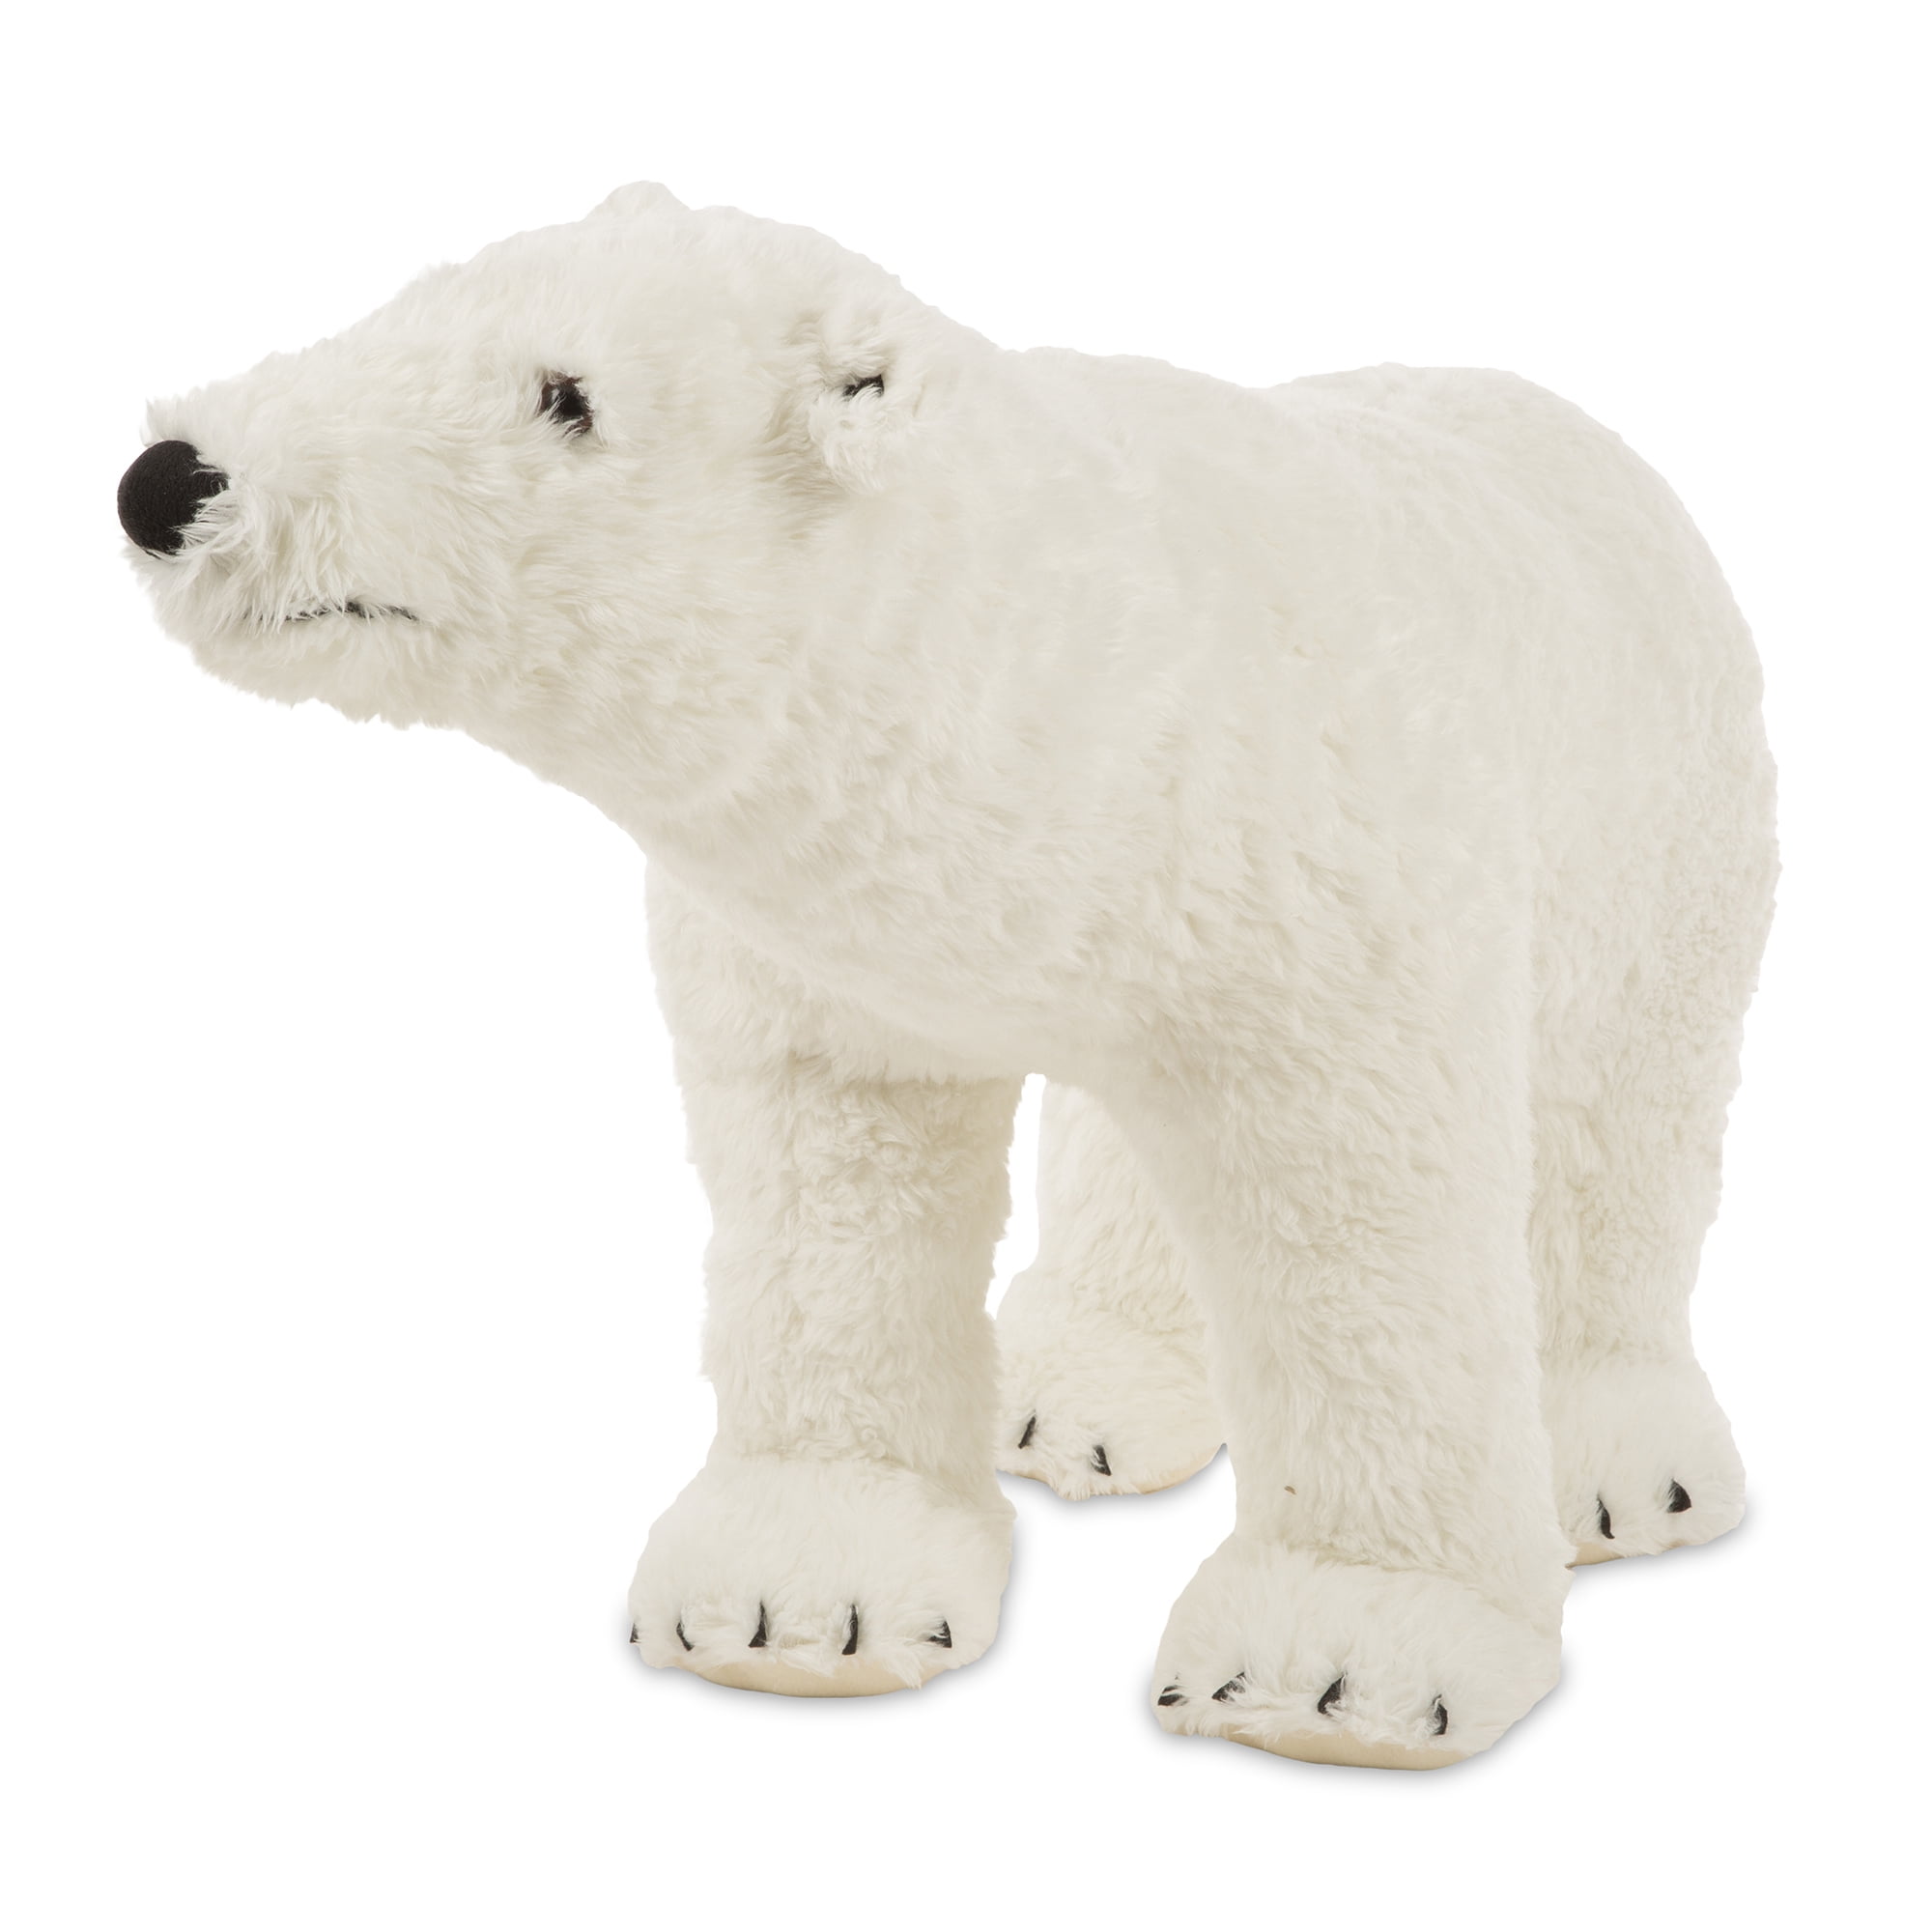 Mousehouse 42cm Adorable Plush Polar Bear Soft Toy Teddy Bear Stuffed Animal 